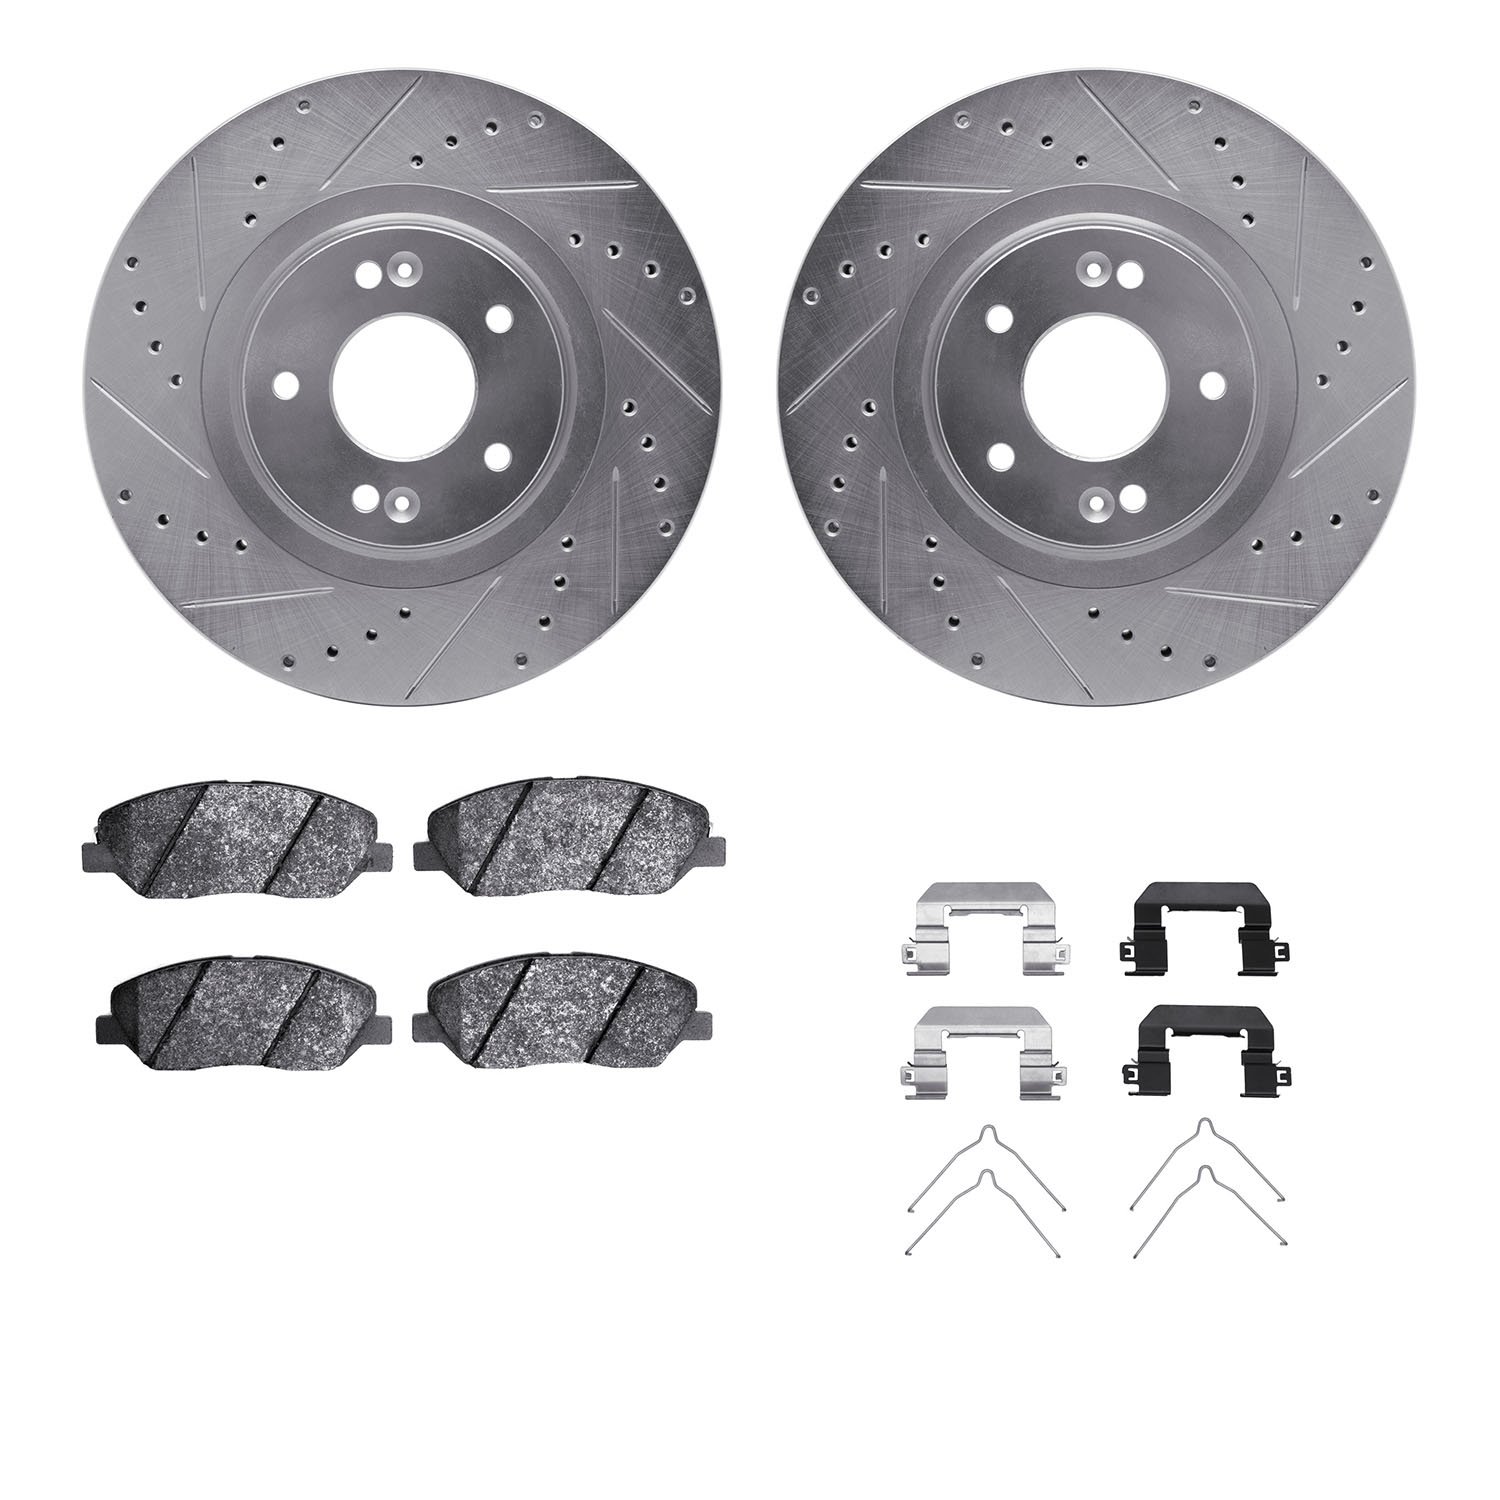 7312-03042 Drilled/Slotted Brake Rotor with 3000-Series Ceramic Brake Pads Kit & Hardware [Silver], 2013-2019 Kia/Hyundai/Genesi